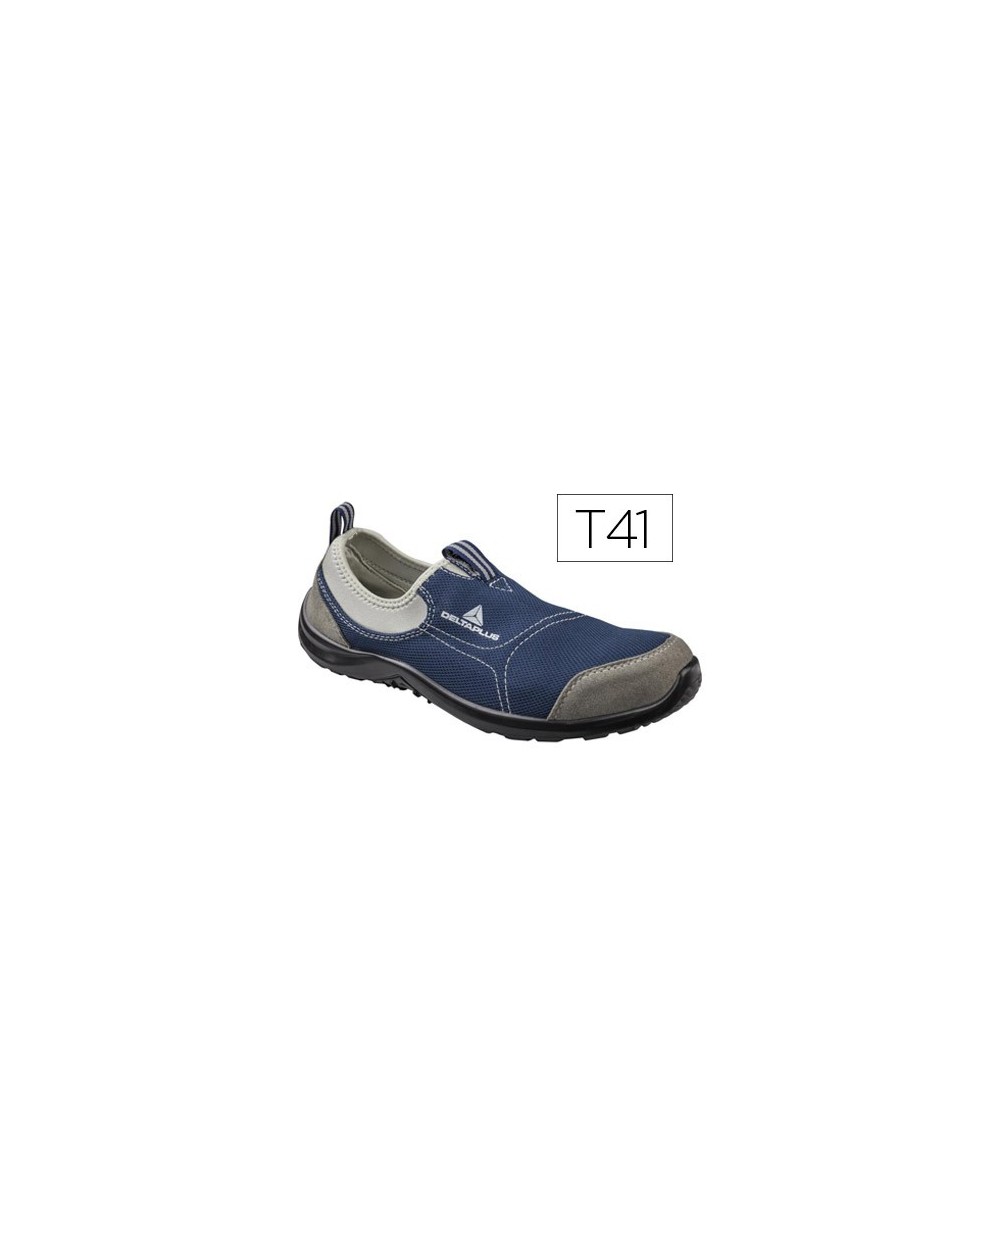 Zapatos de seguridad deltaplus de poliester y algodon con plantilla y puntera color azul marino talla 41